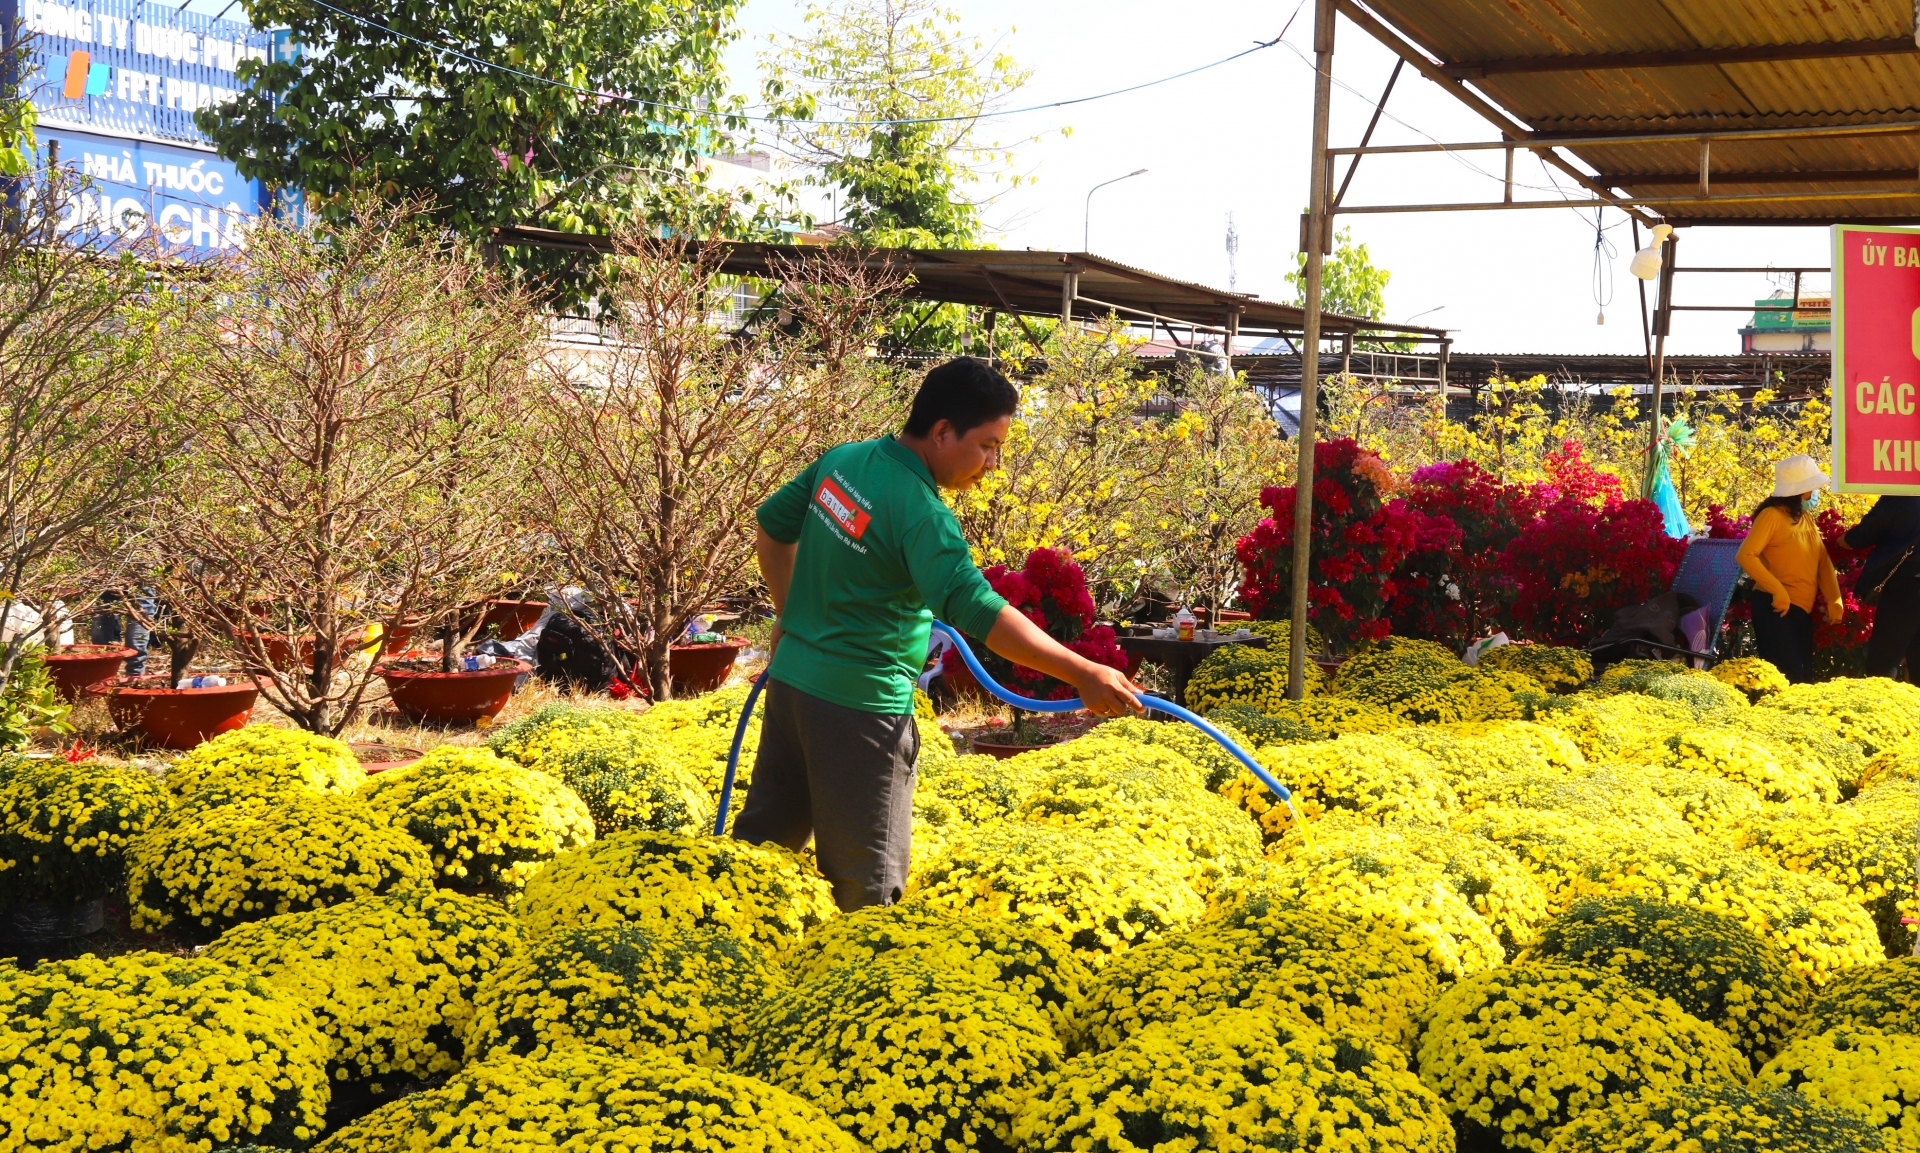 Trời nắng nóng nên những người kinh doanh hoa, cây cảnh thường xuyên phải tưới nước làm mát cho hoa